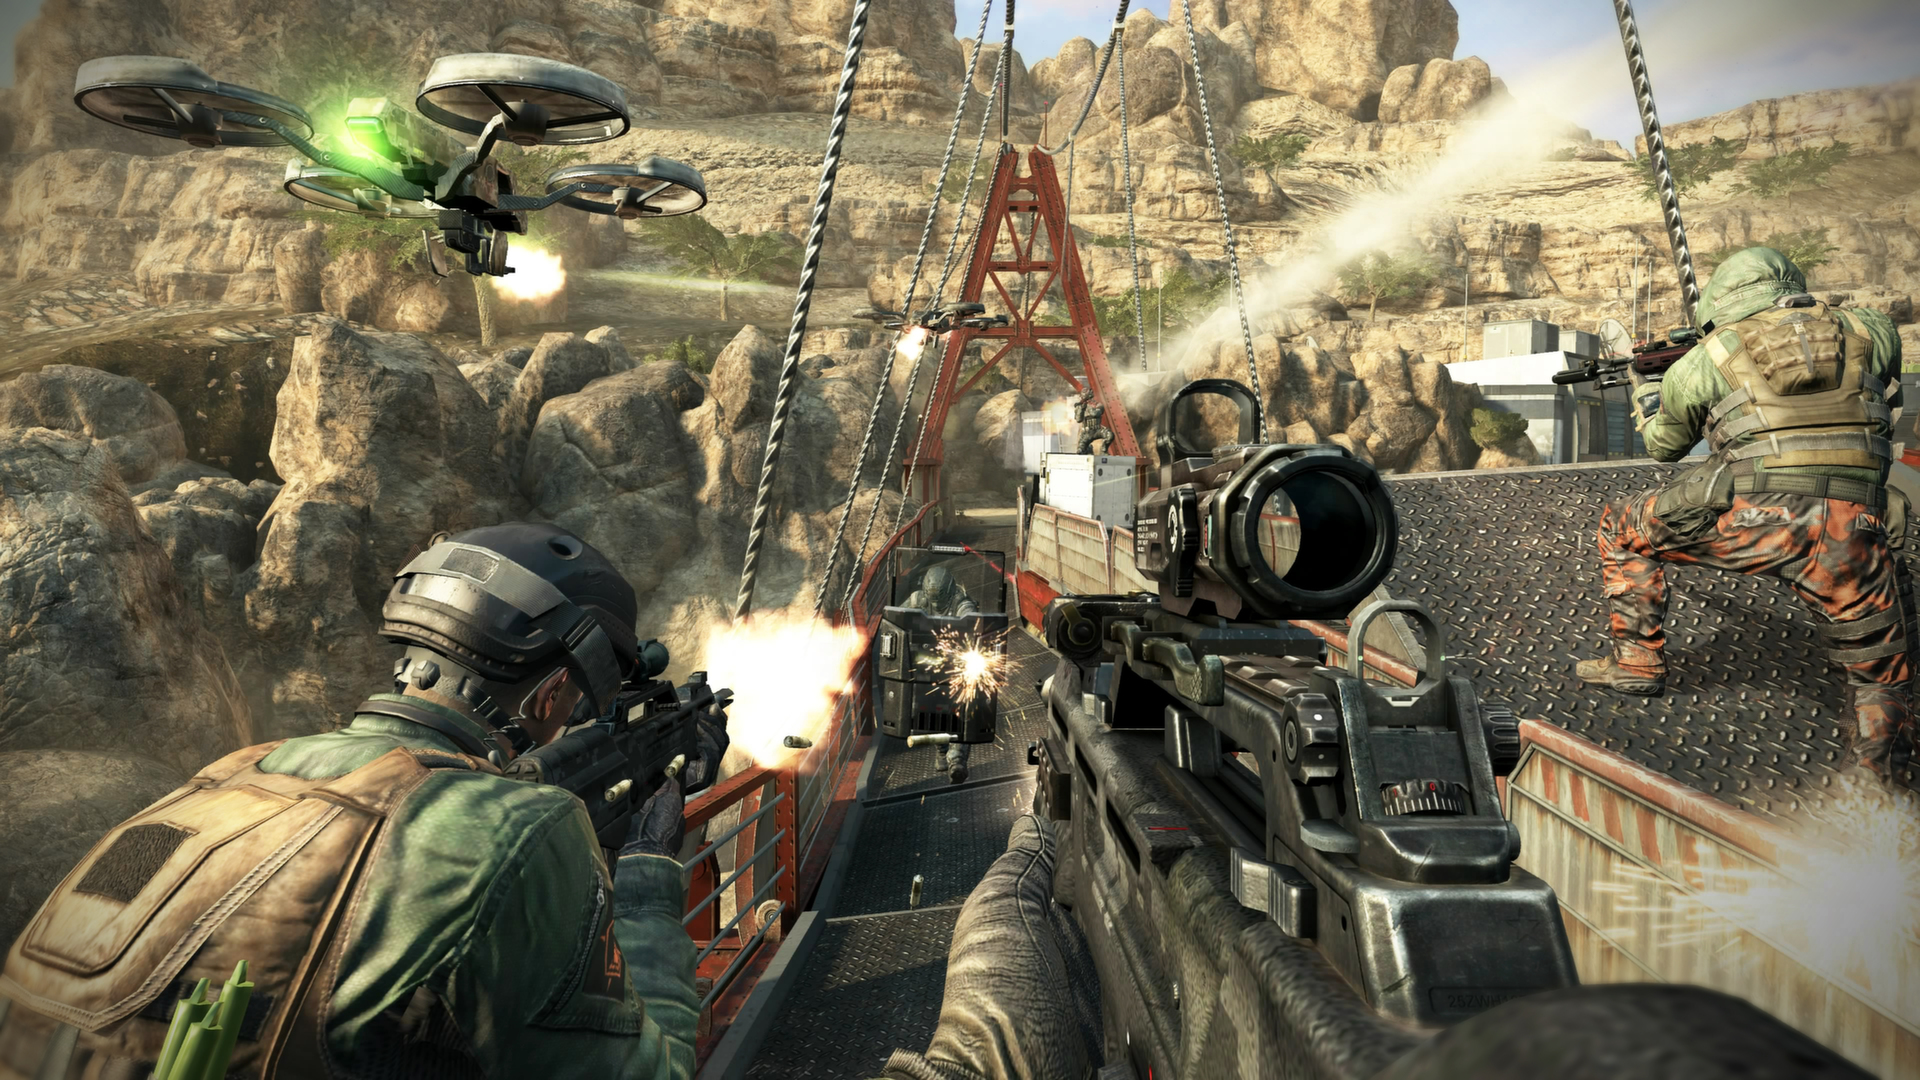 Call of Duty: Black Ops II screenshot 2